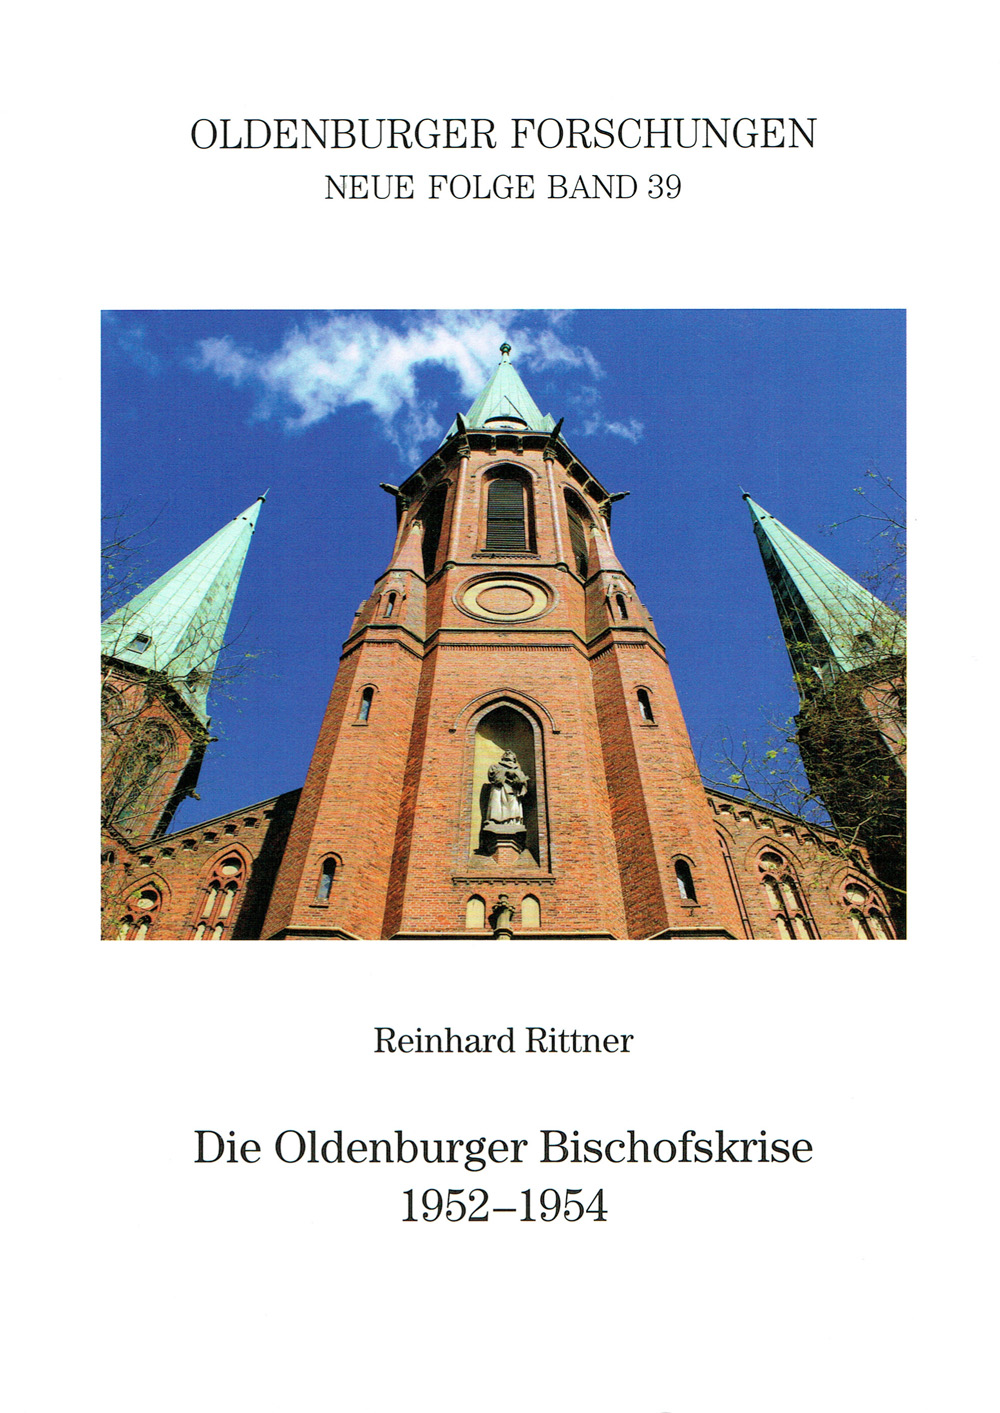 Oldenburger Forschungen Band 39 Titelbild